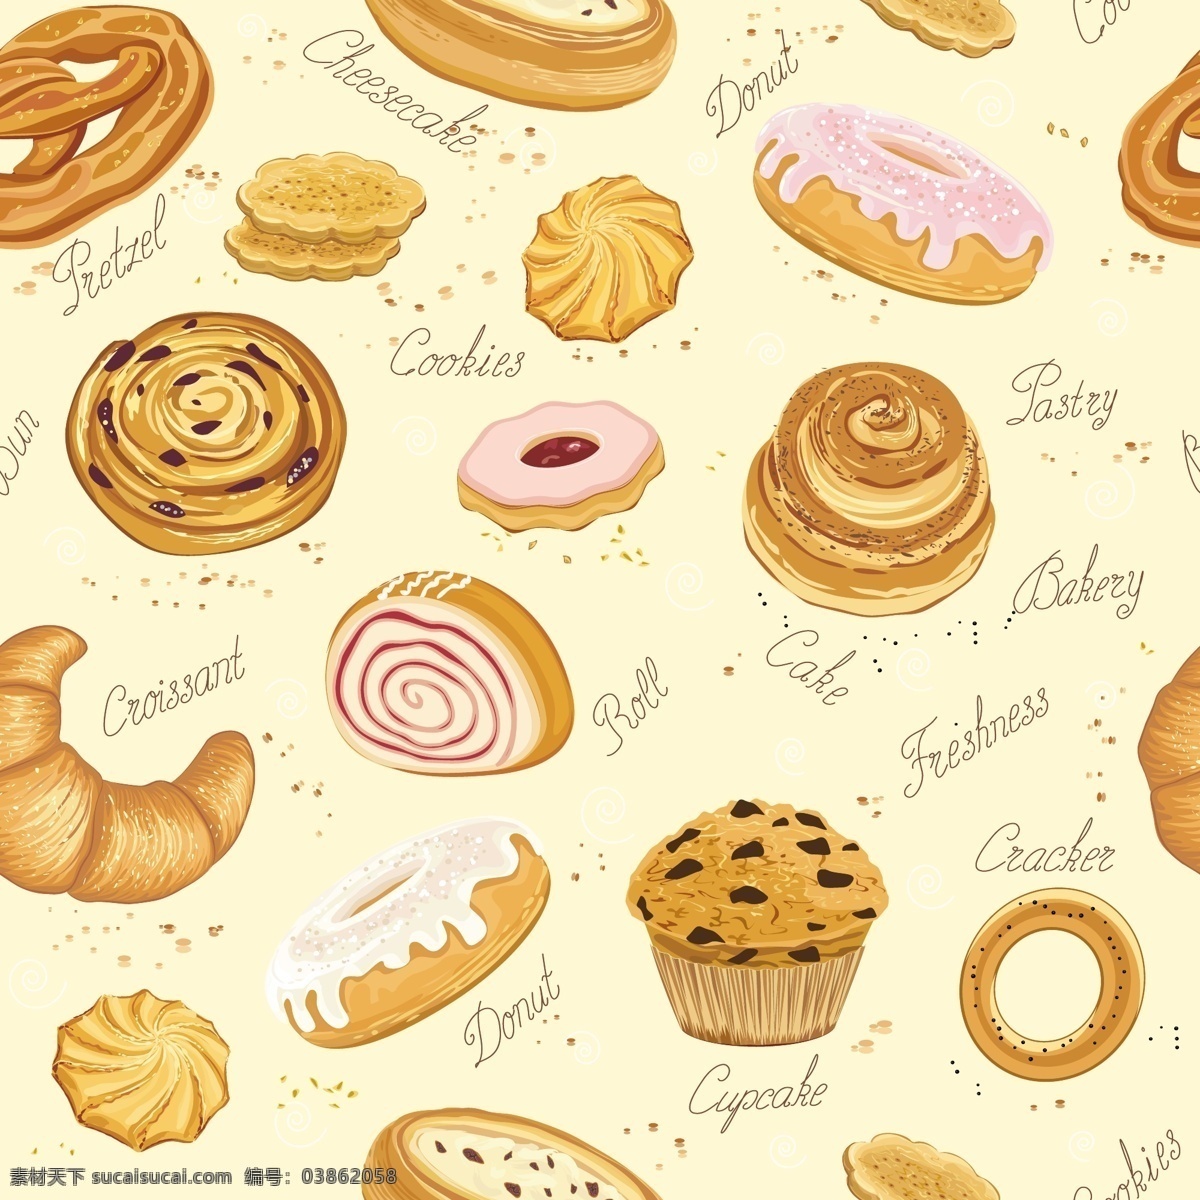 美味 烤 品 载体 背景 饼干 蛋糕 货物 甜甜圈 烘烤面包 矢量 矢量图 其他矢量图